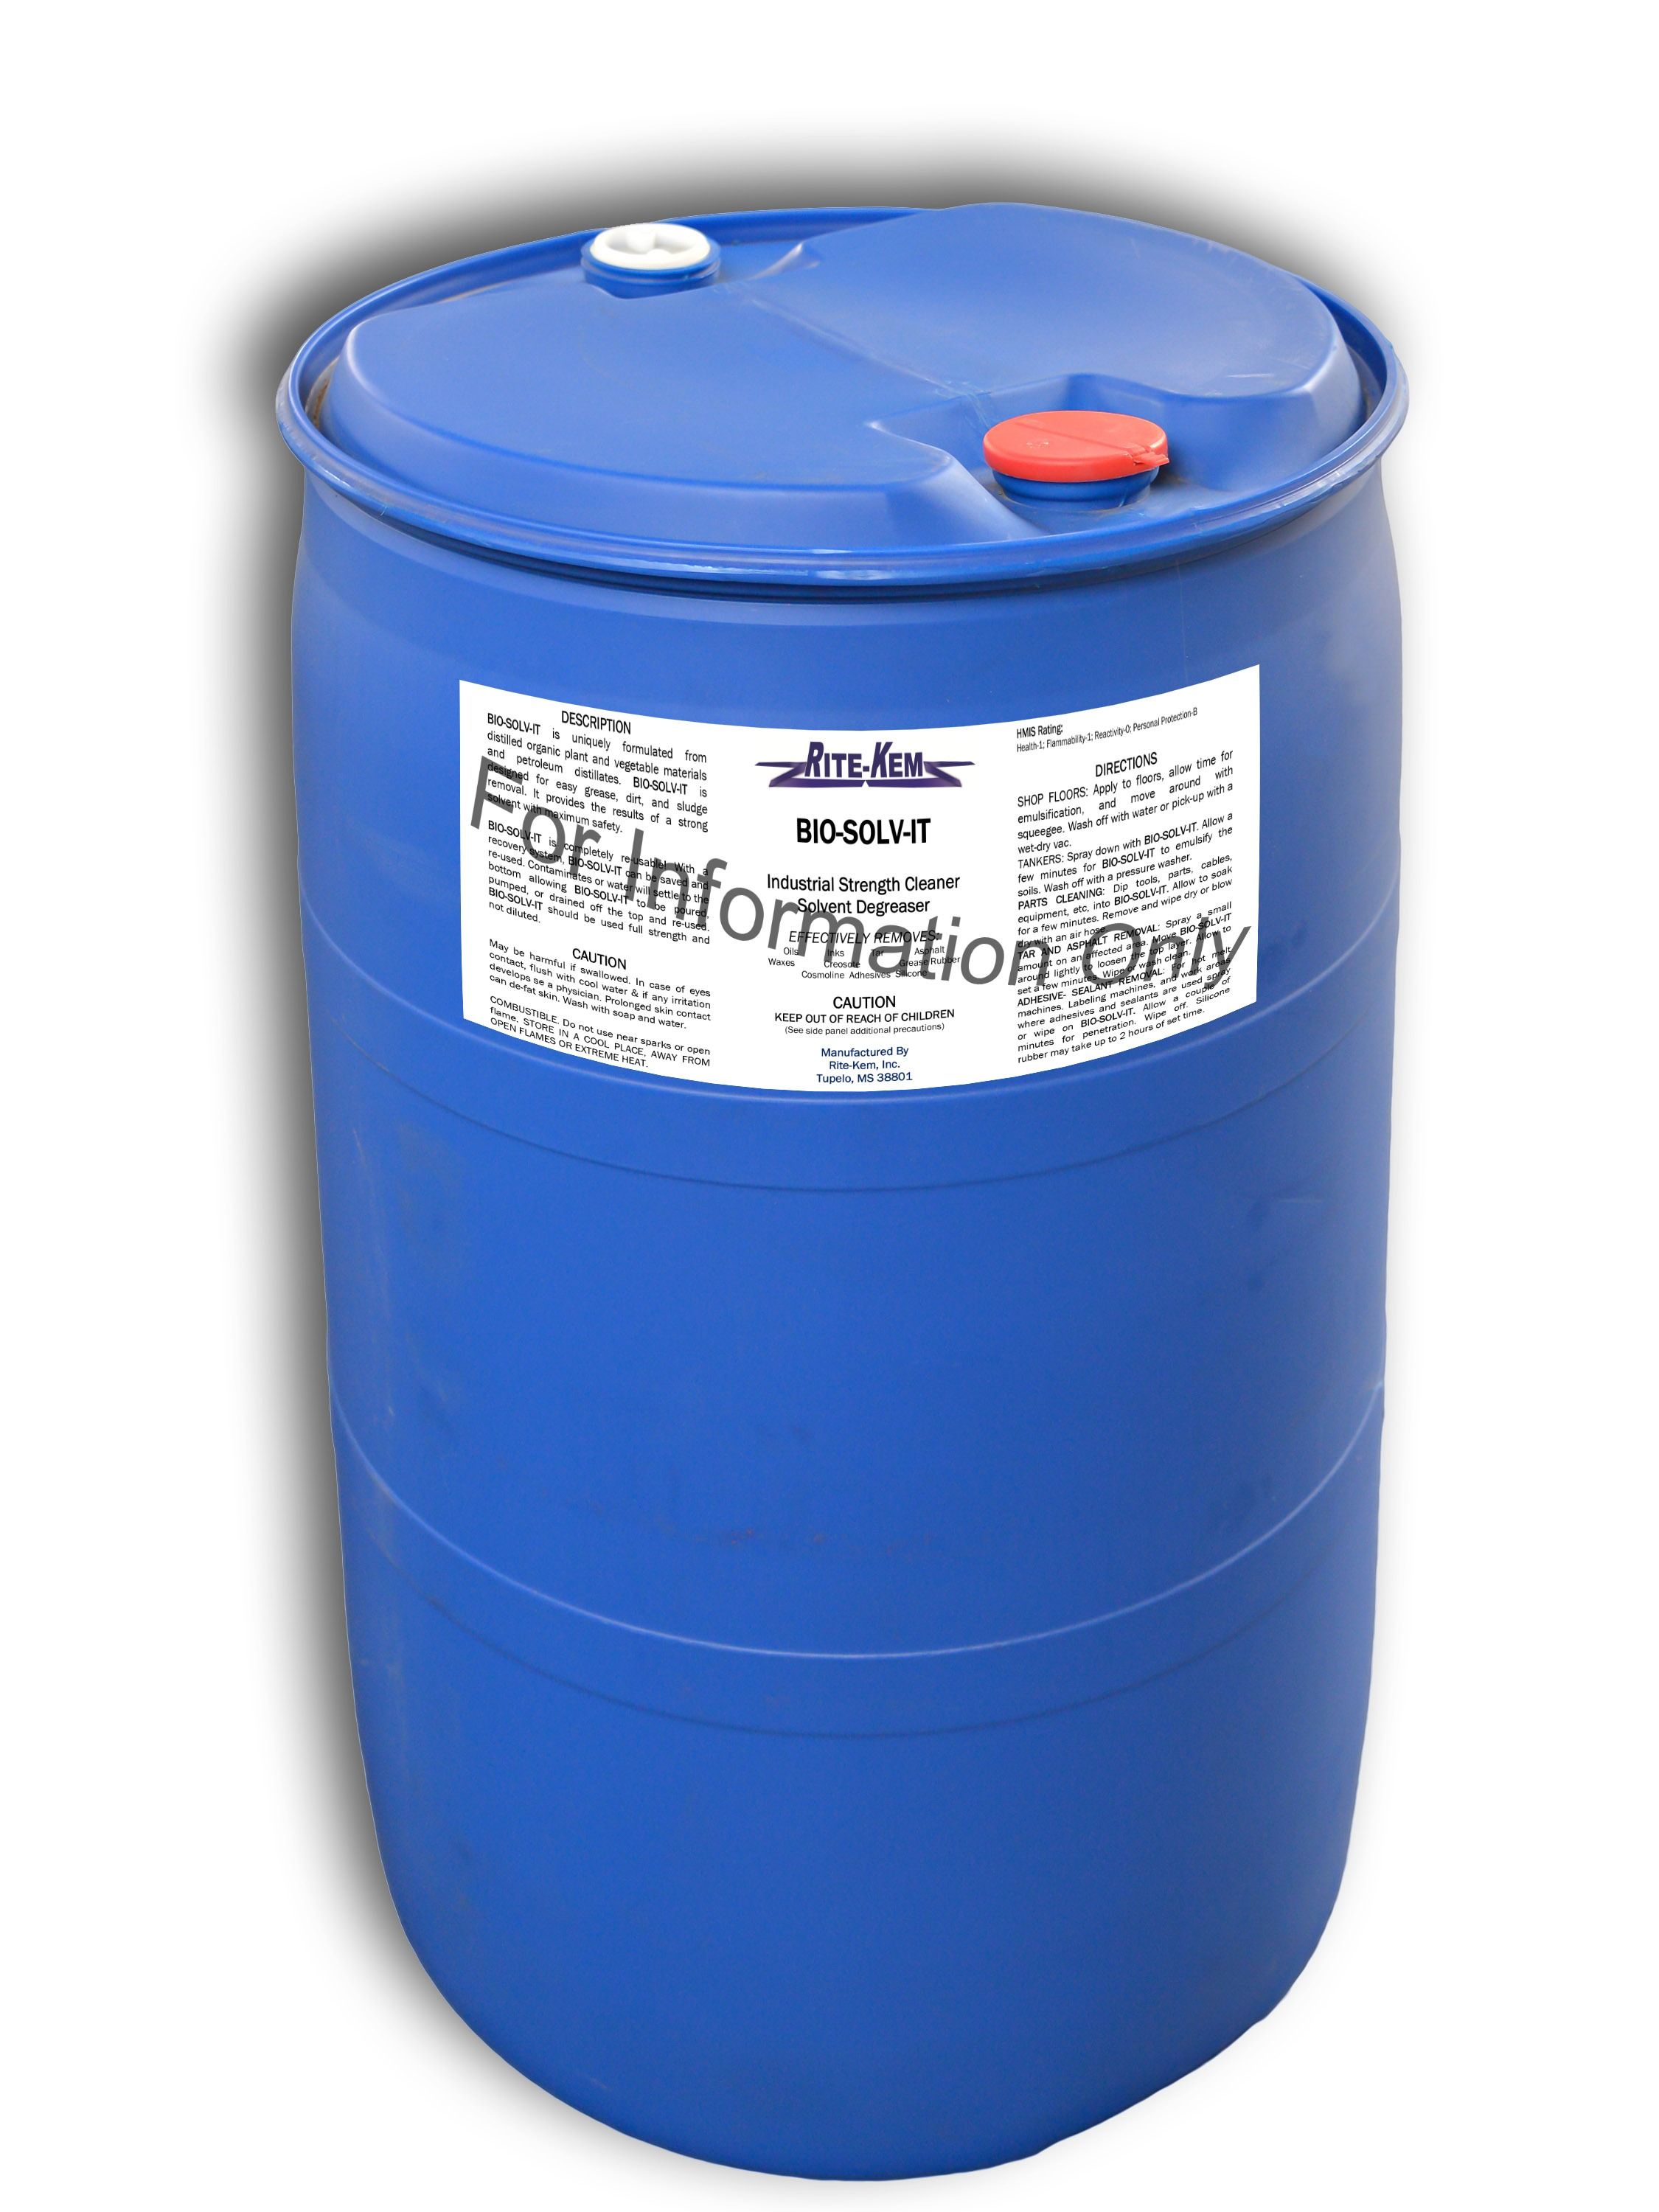 55 Gallon Drum - Industrial Distilled Water